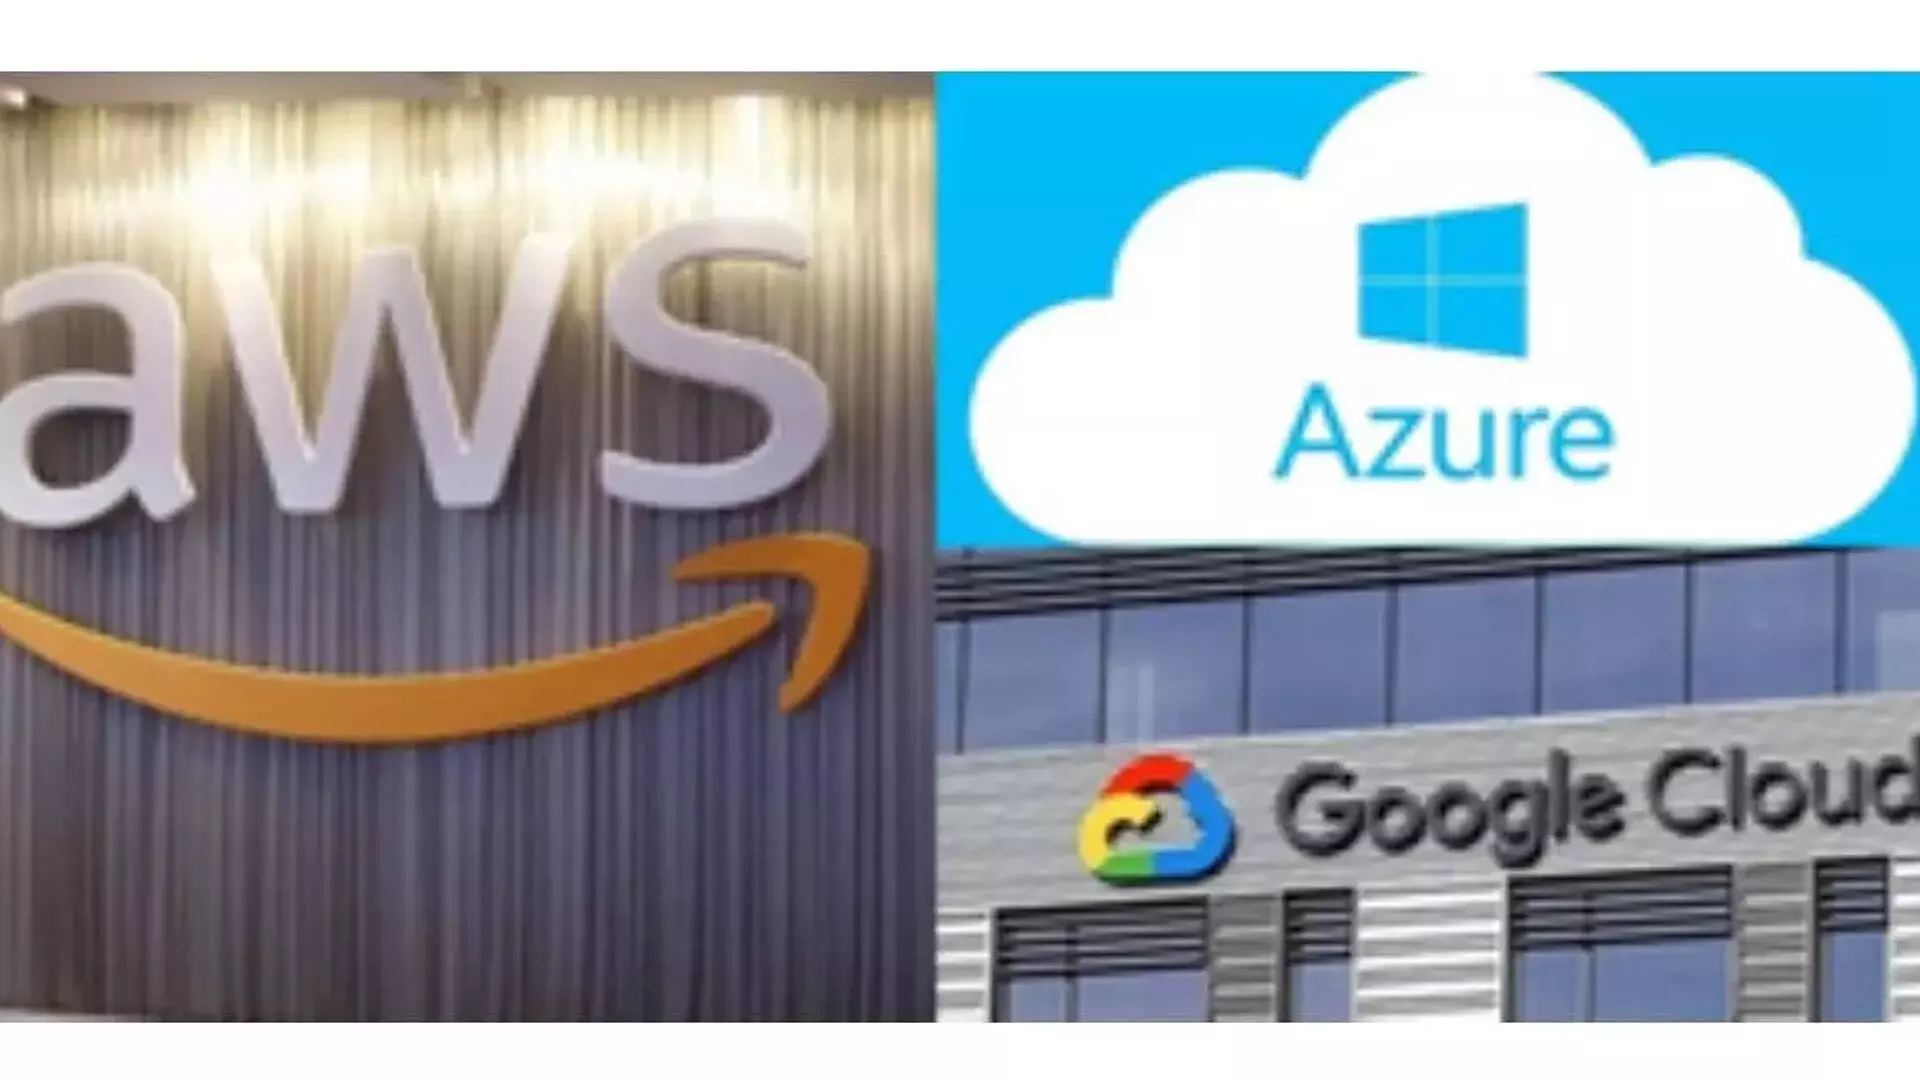 AWS, Microsoft Azure, Google Cloud अब वैश्विक क्लाउड खर्च के 66 प्रतिशत पर हावी